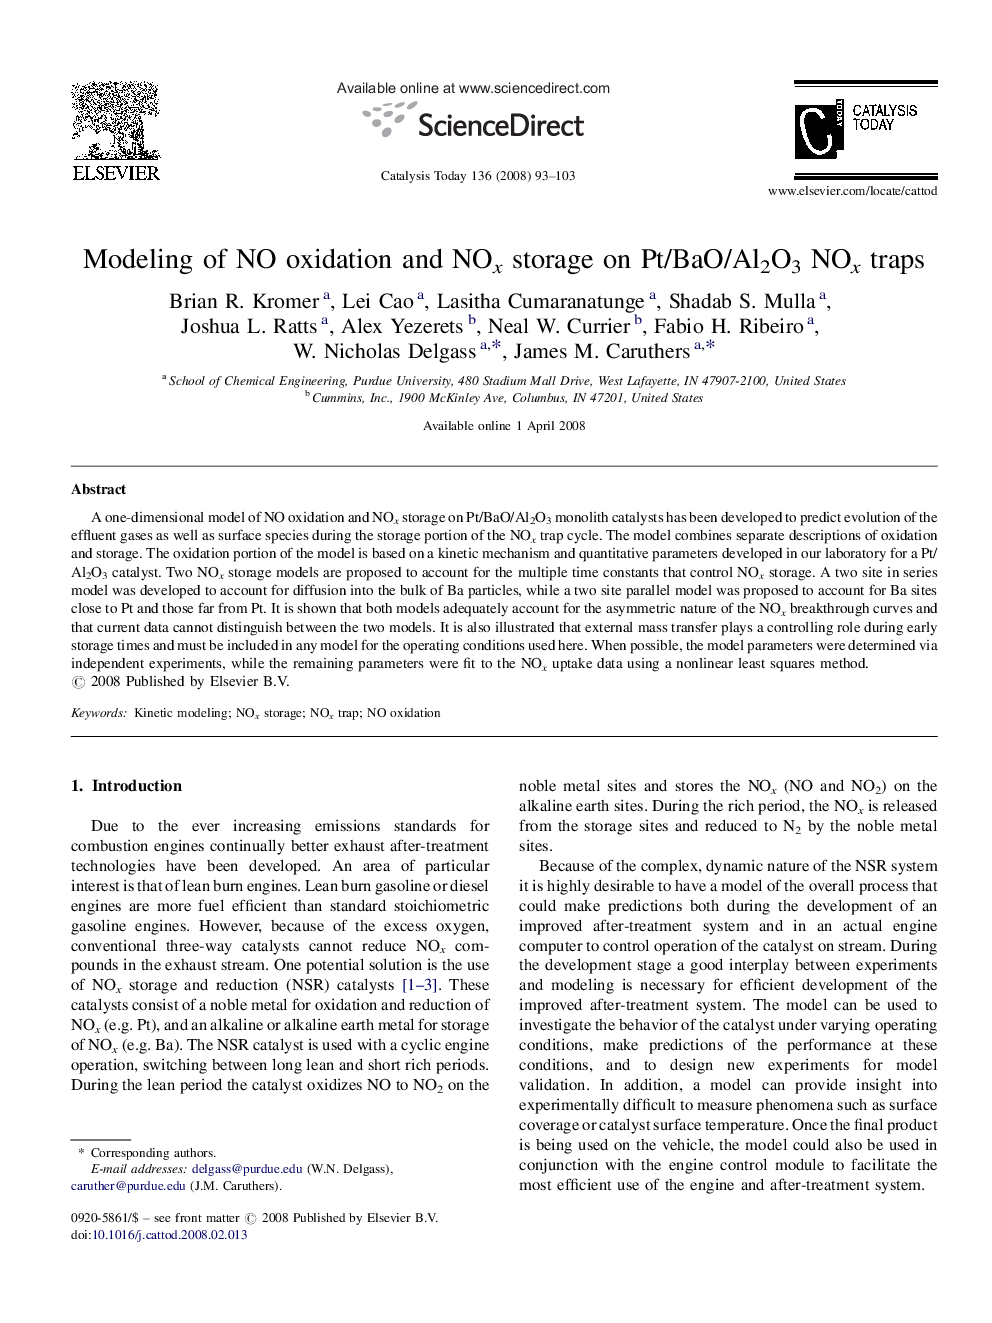 Modeling of NO oxidation and NOx storage on Pt/BaO/Al2O3 NOx traps